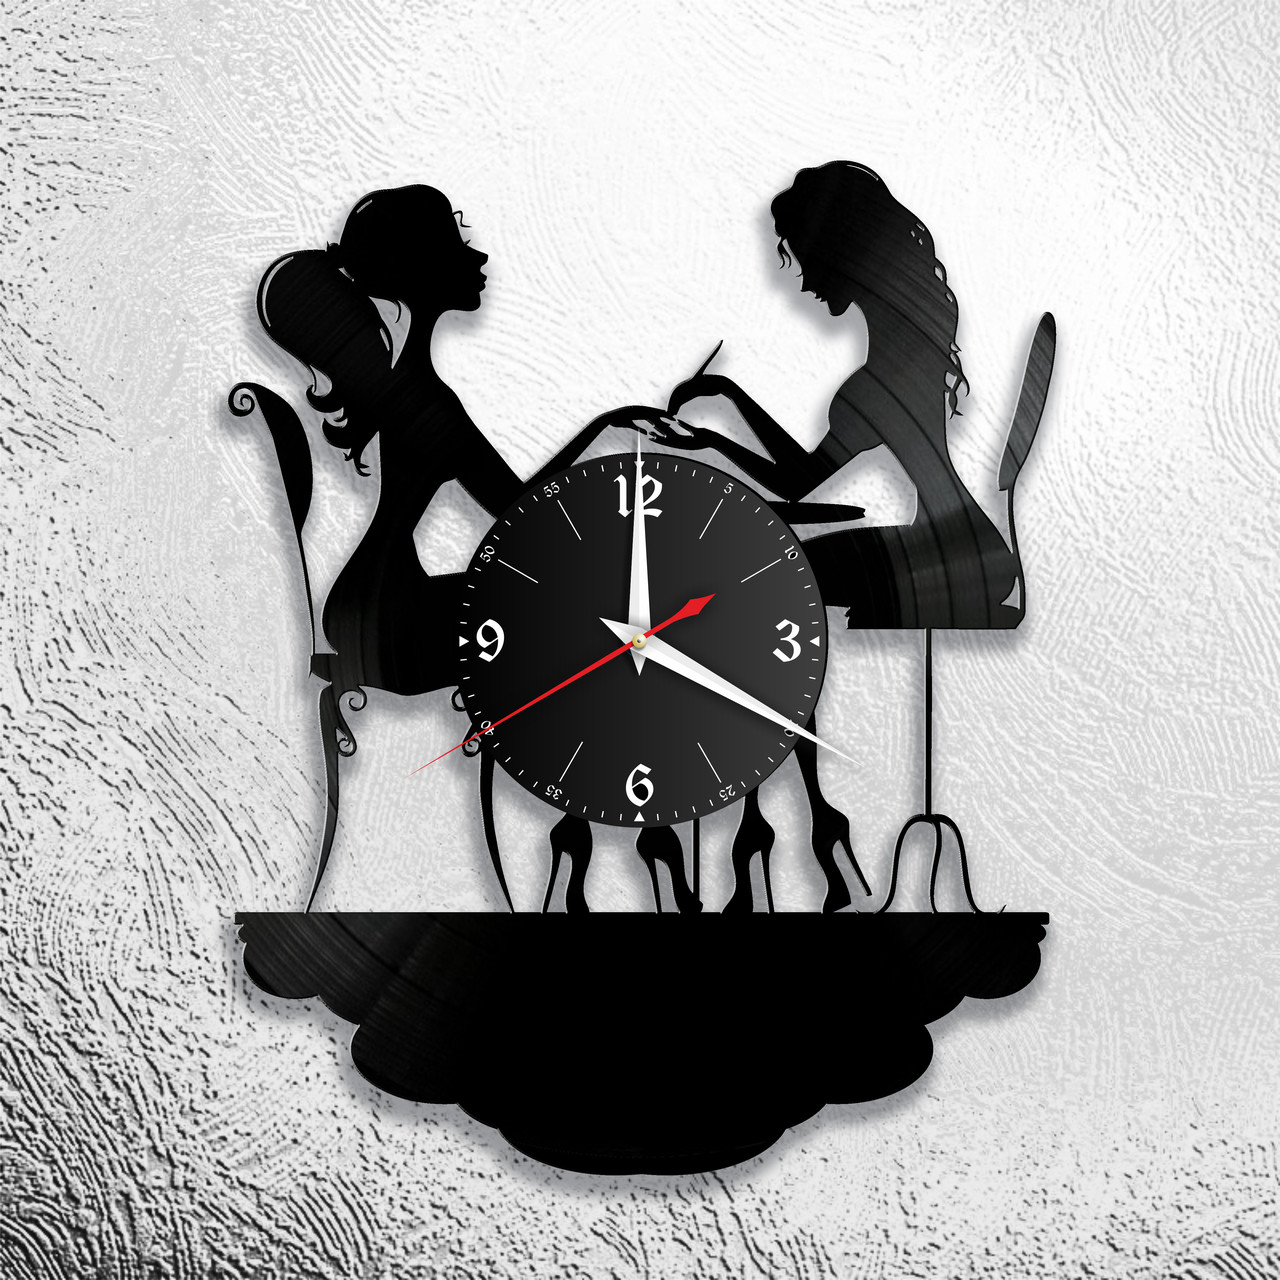 Оригинальные часы из виниловых пластинок "2 девушки" версия 2, фото 1